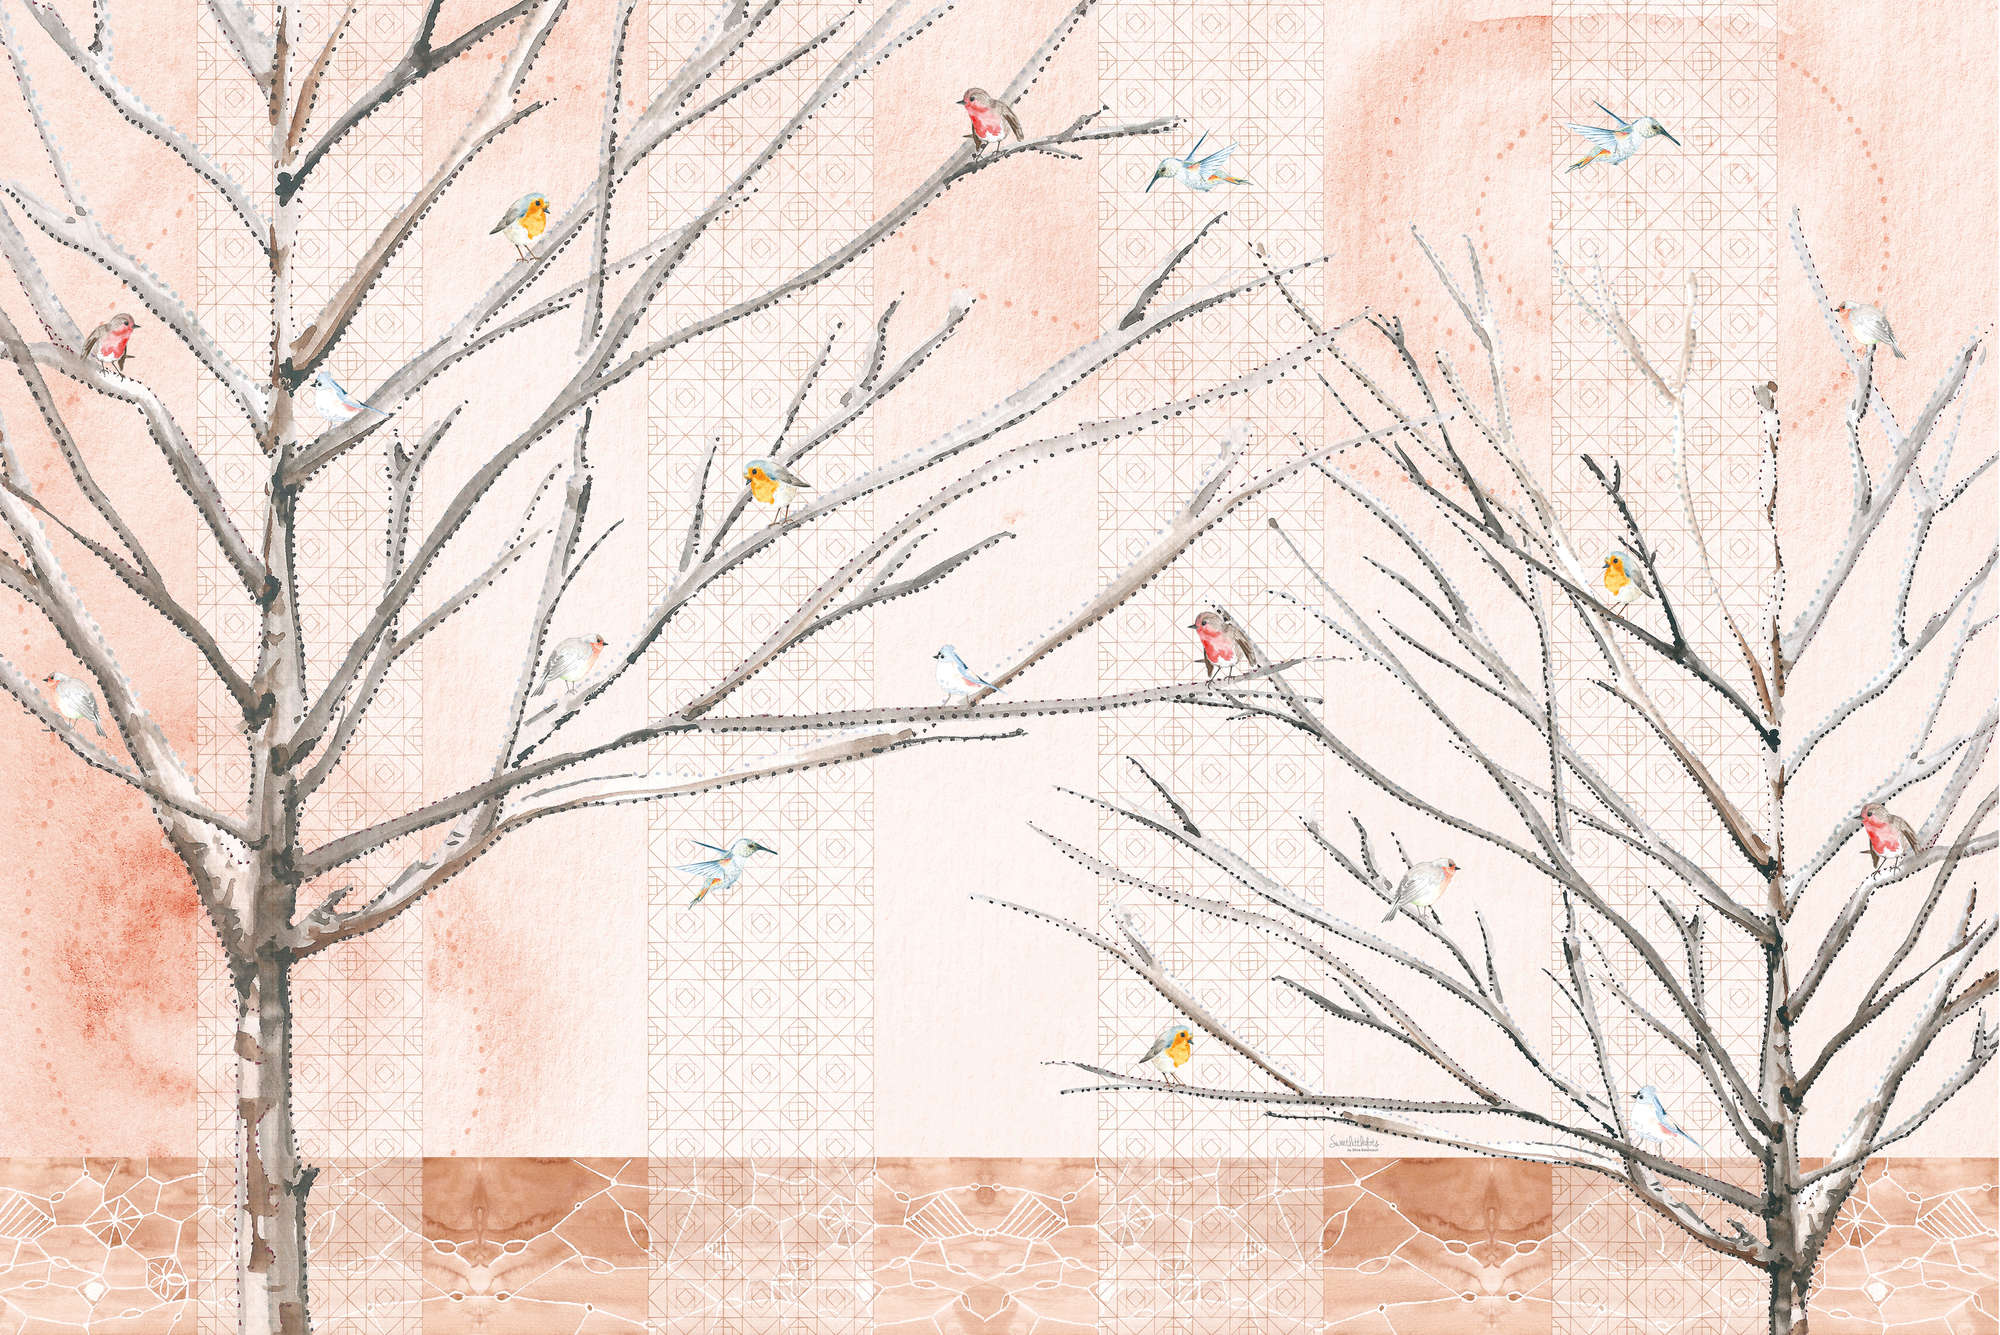             Mural artístico Árboles con pájaros en beige y marrón sobre vinilo texturizado
        